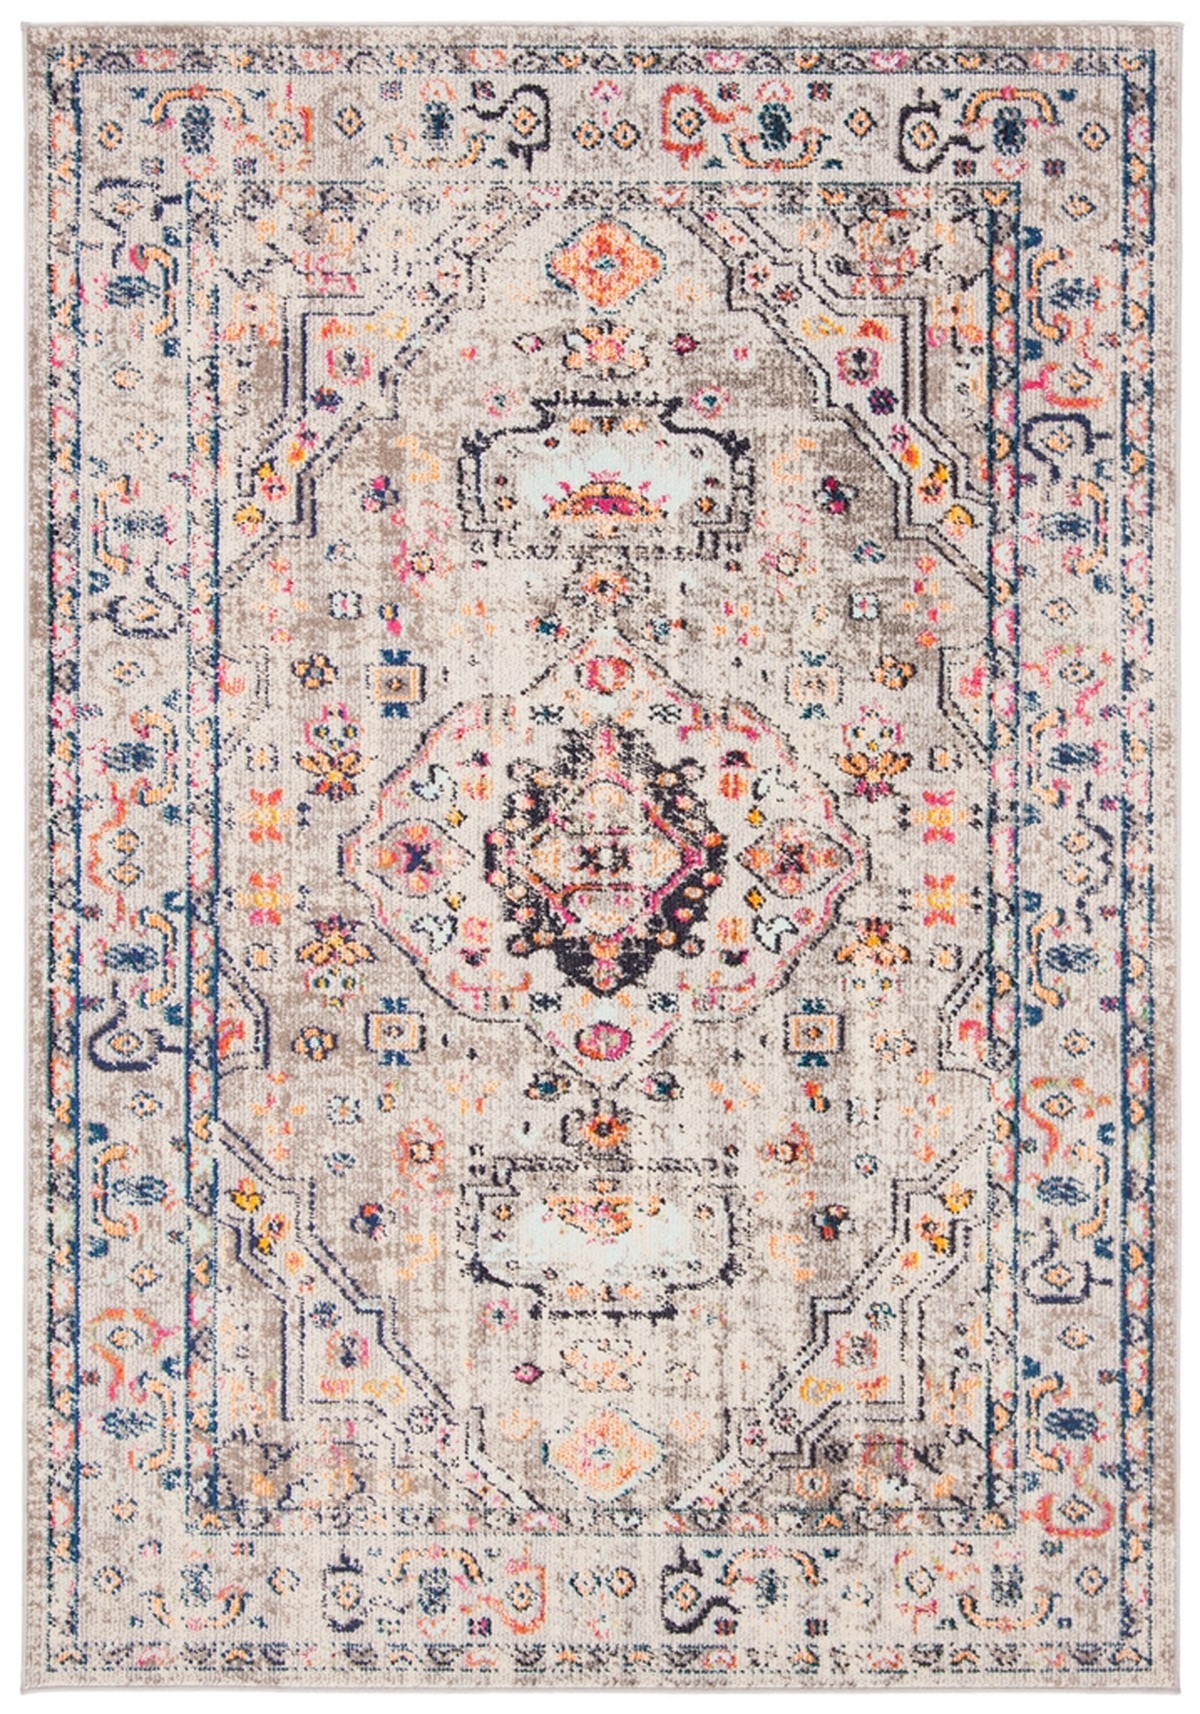 高端家具多年品牌Safavieh现多种经典高雅地毯系列有折扣价，平均65折起，价格从$36左右起。Clearance Page - shop.safavieh.com